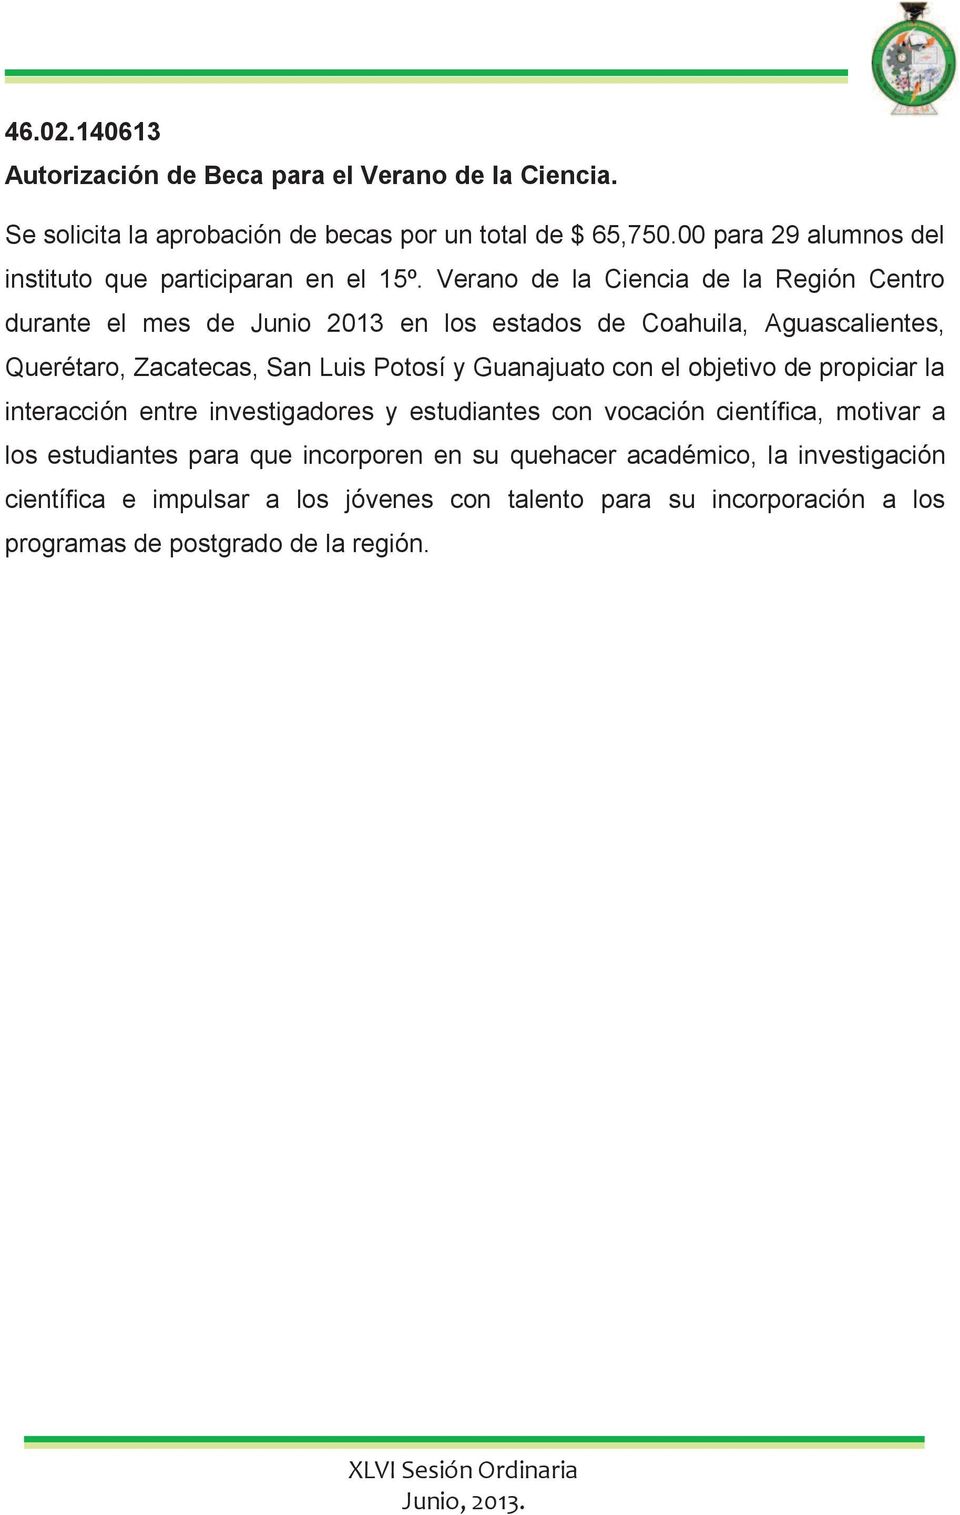 Verano de la Ciencia de la Región Centro durante el mes de Junio 2013 en los estados de Coahuila, Aguascalientes, Querétaro, Zacatecas, San Luis Potosí y